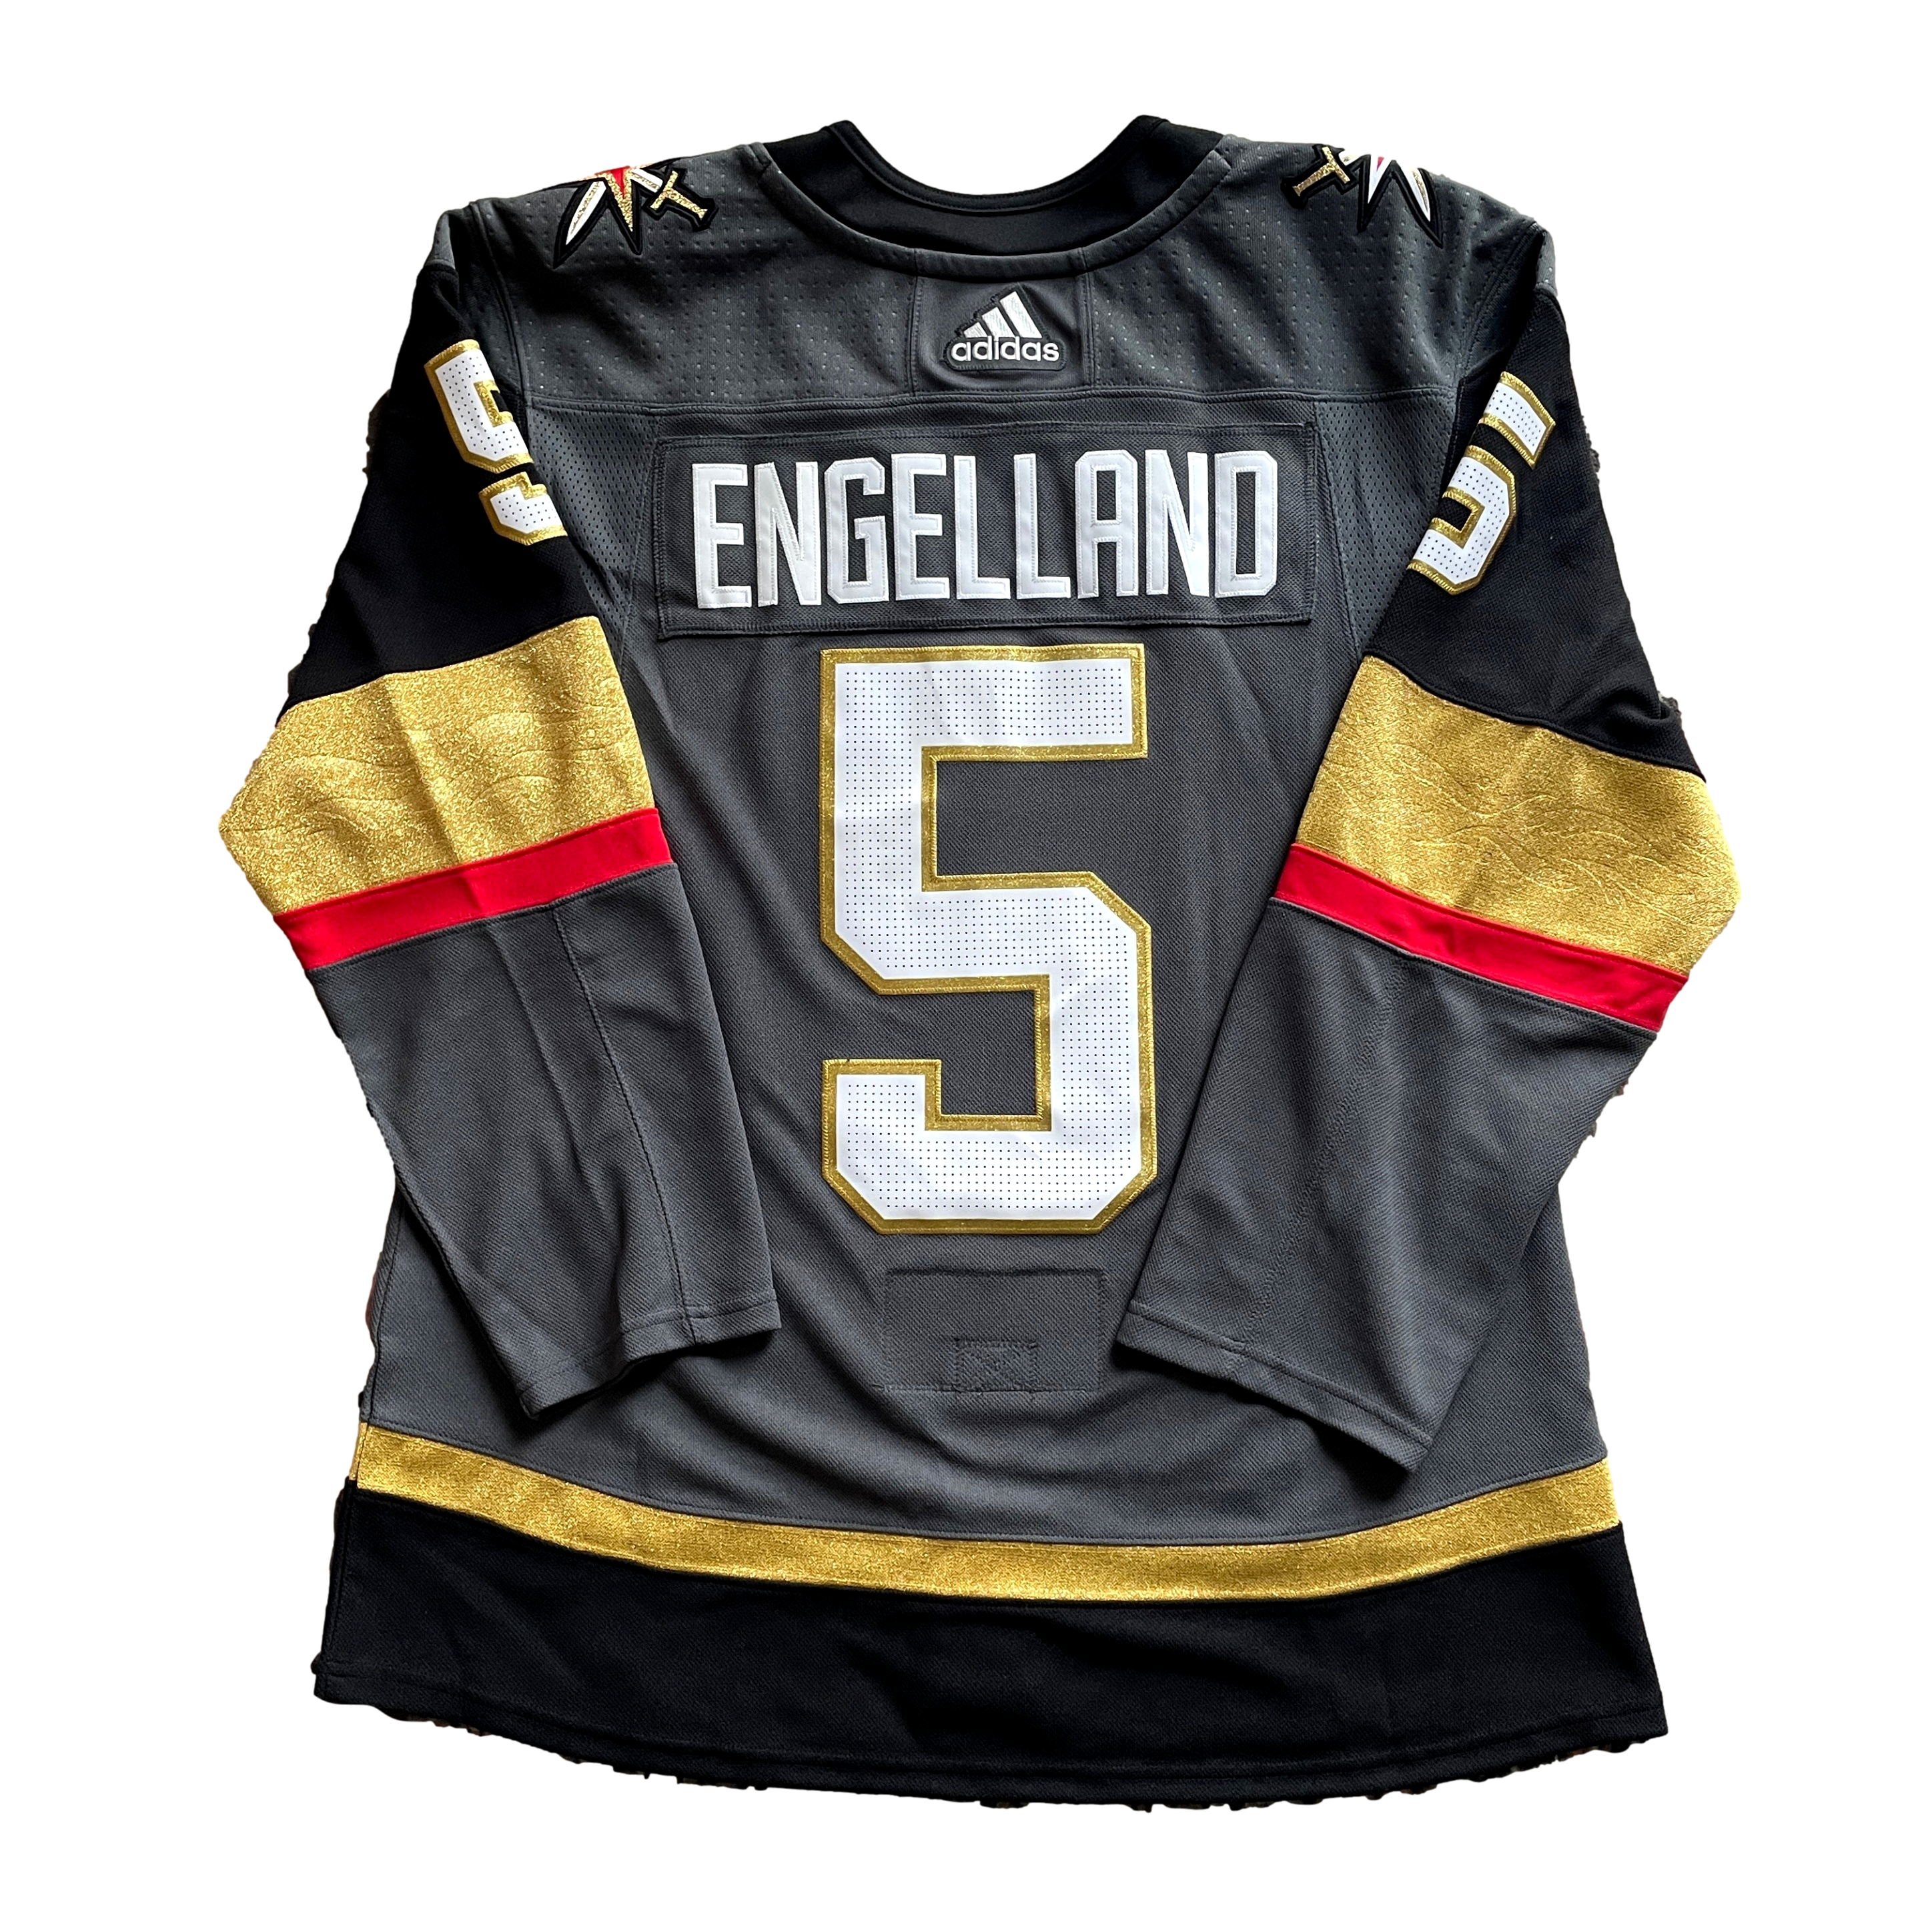 Las Vegas Golden Knights NHL Hockey Jersey (50)